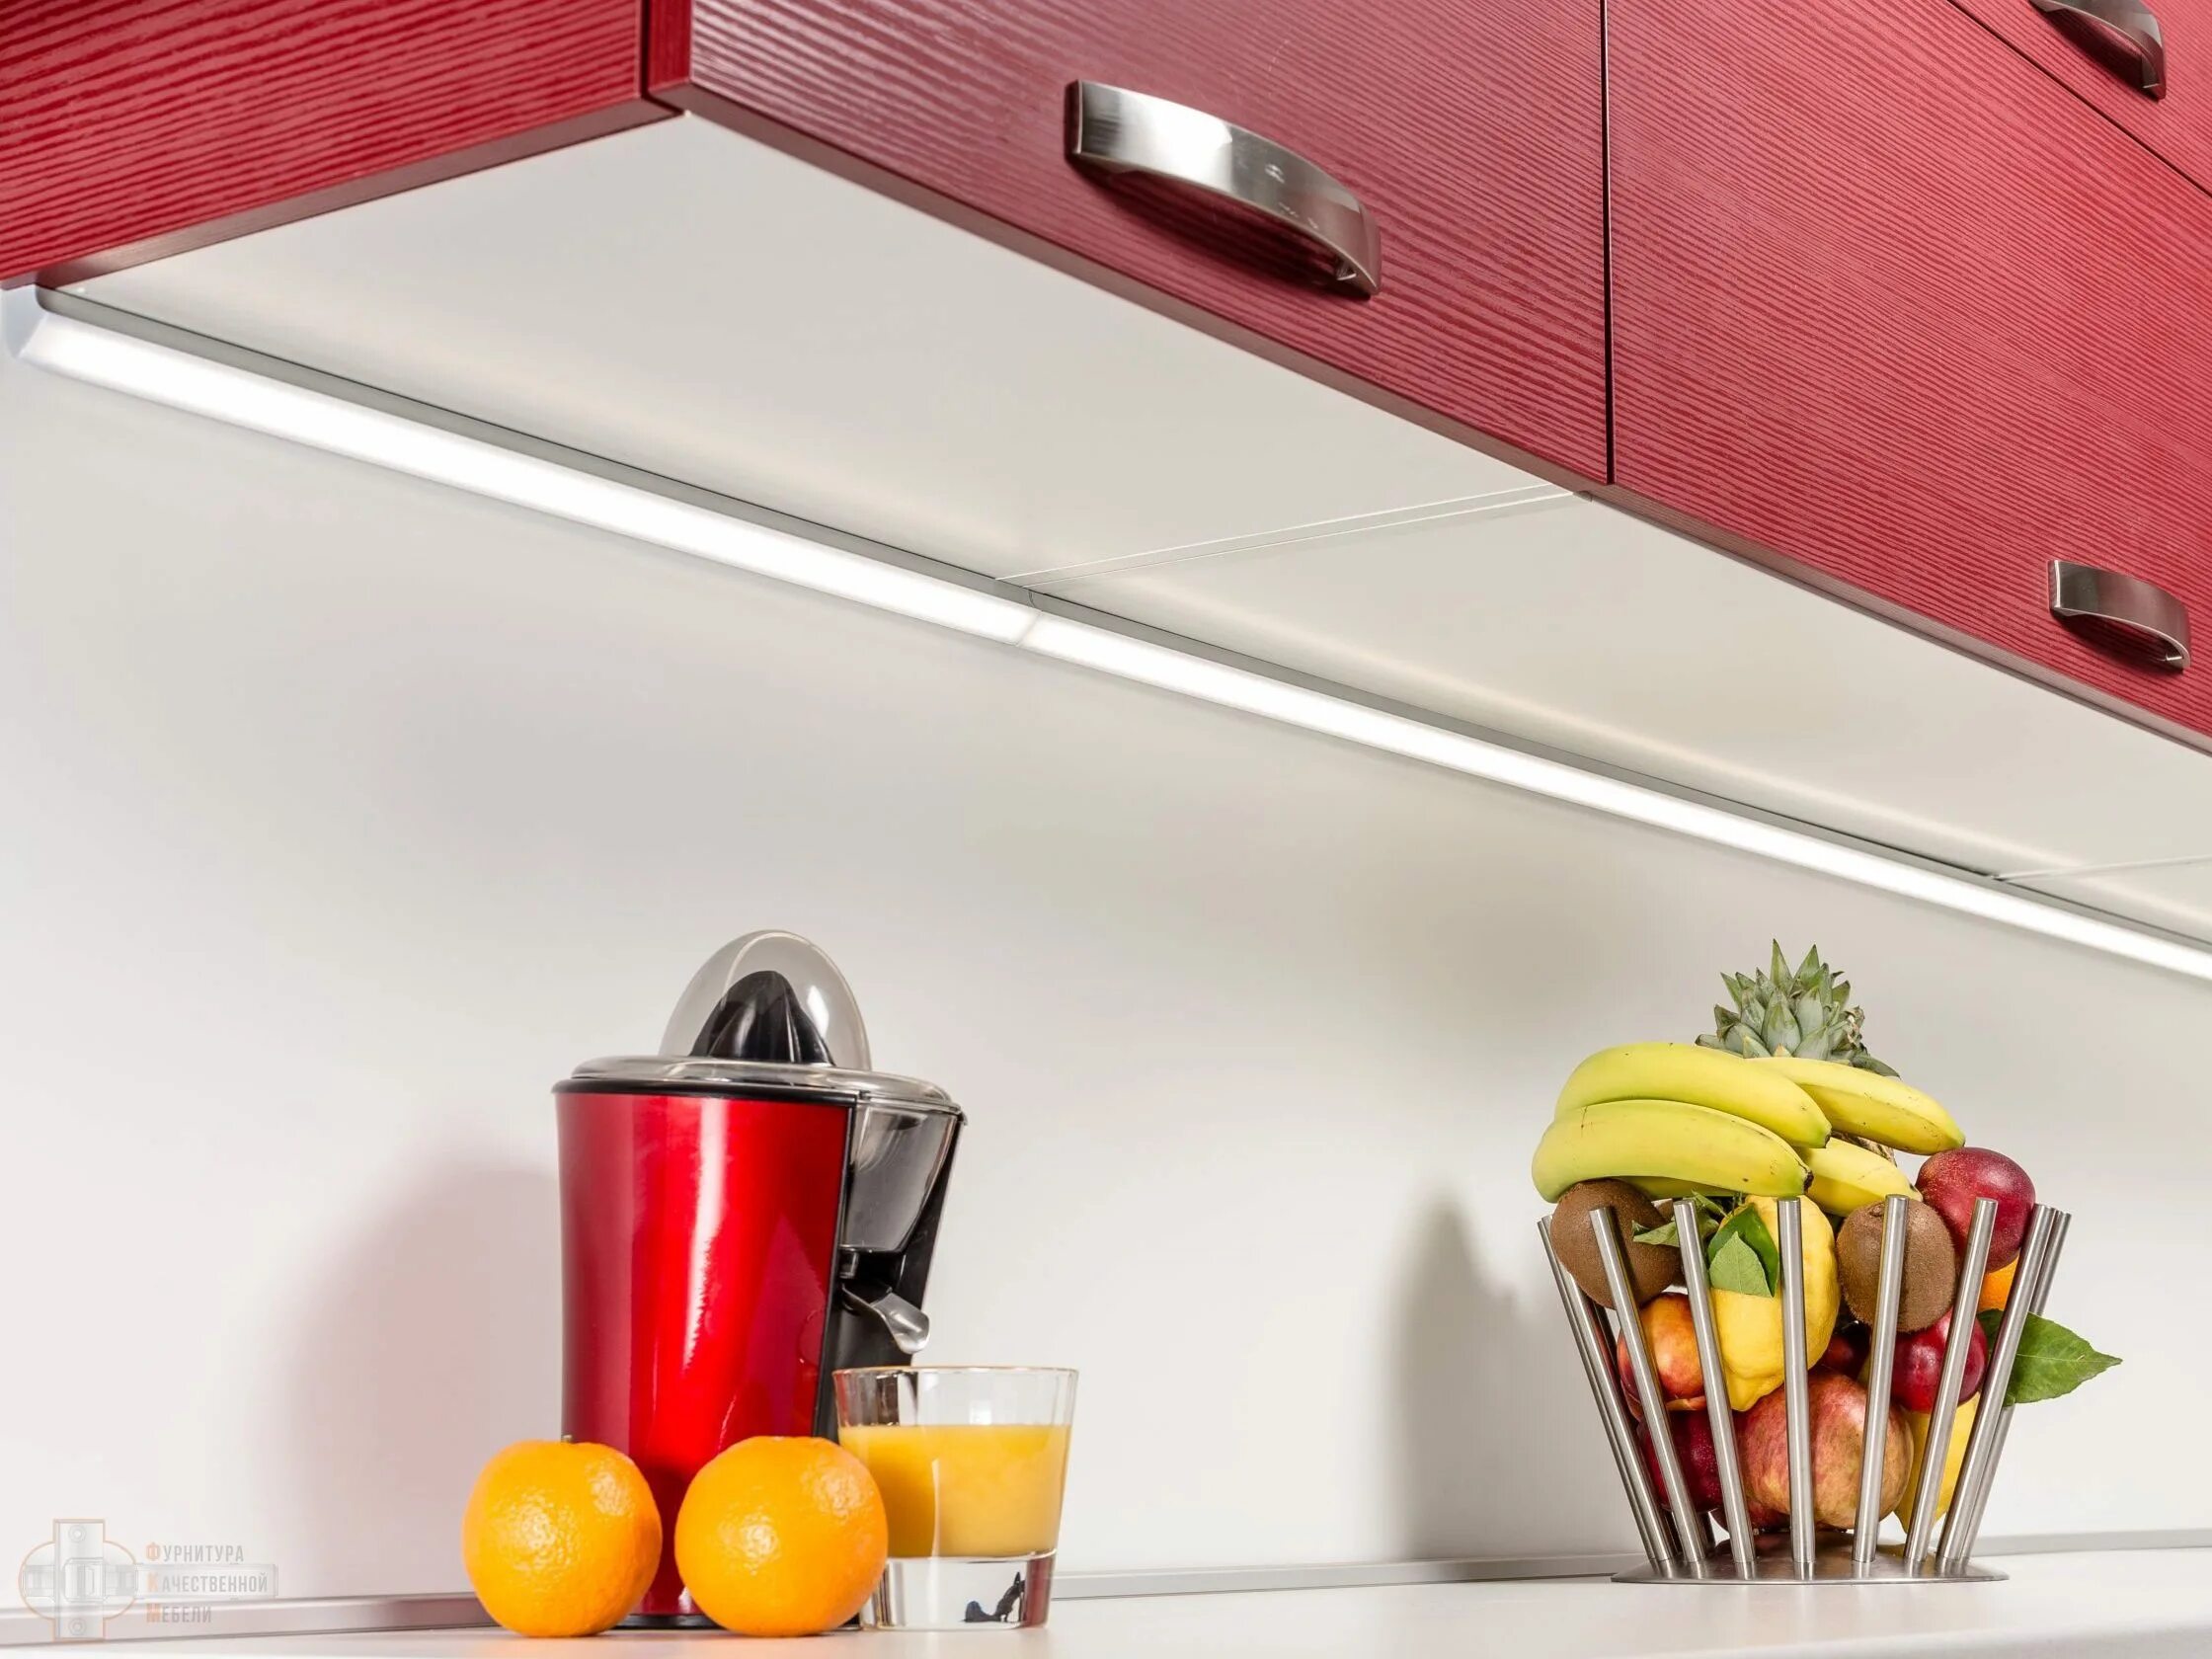 Evoline светодиодный светильник 560 мм. Мебельный светильник Elettroimpianti светодиодный. Светильник для подсветки кухни под шкафом поворотный Luka 79154/08/36. Подсветка кухни какая лучше